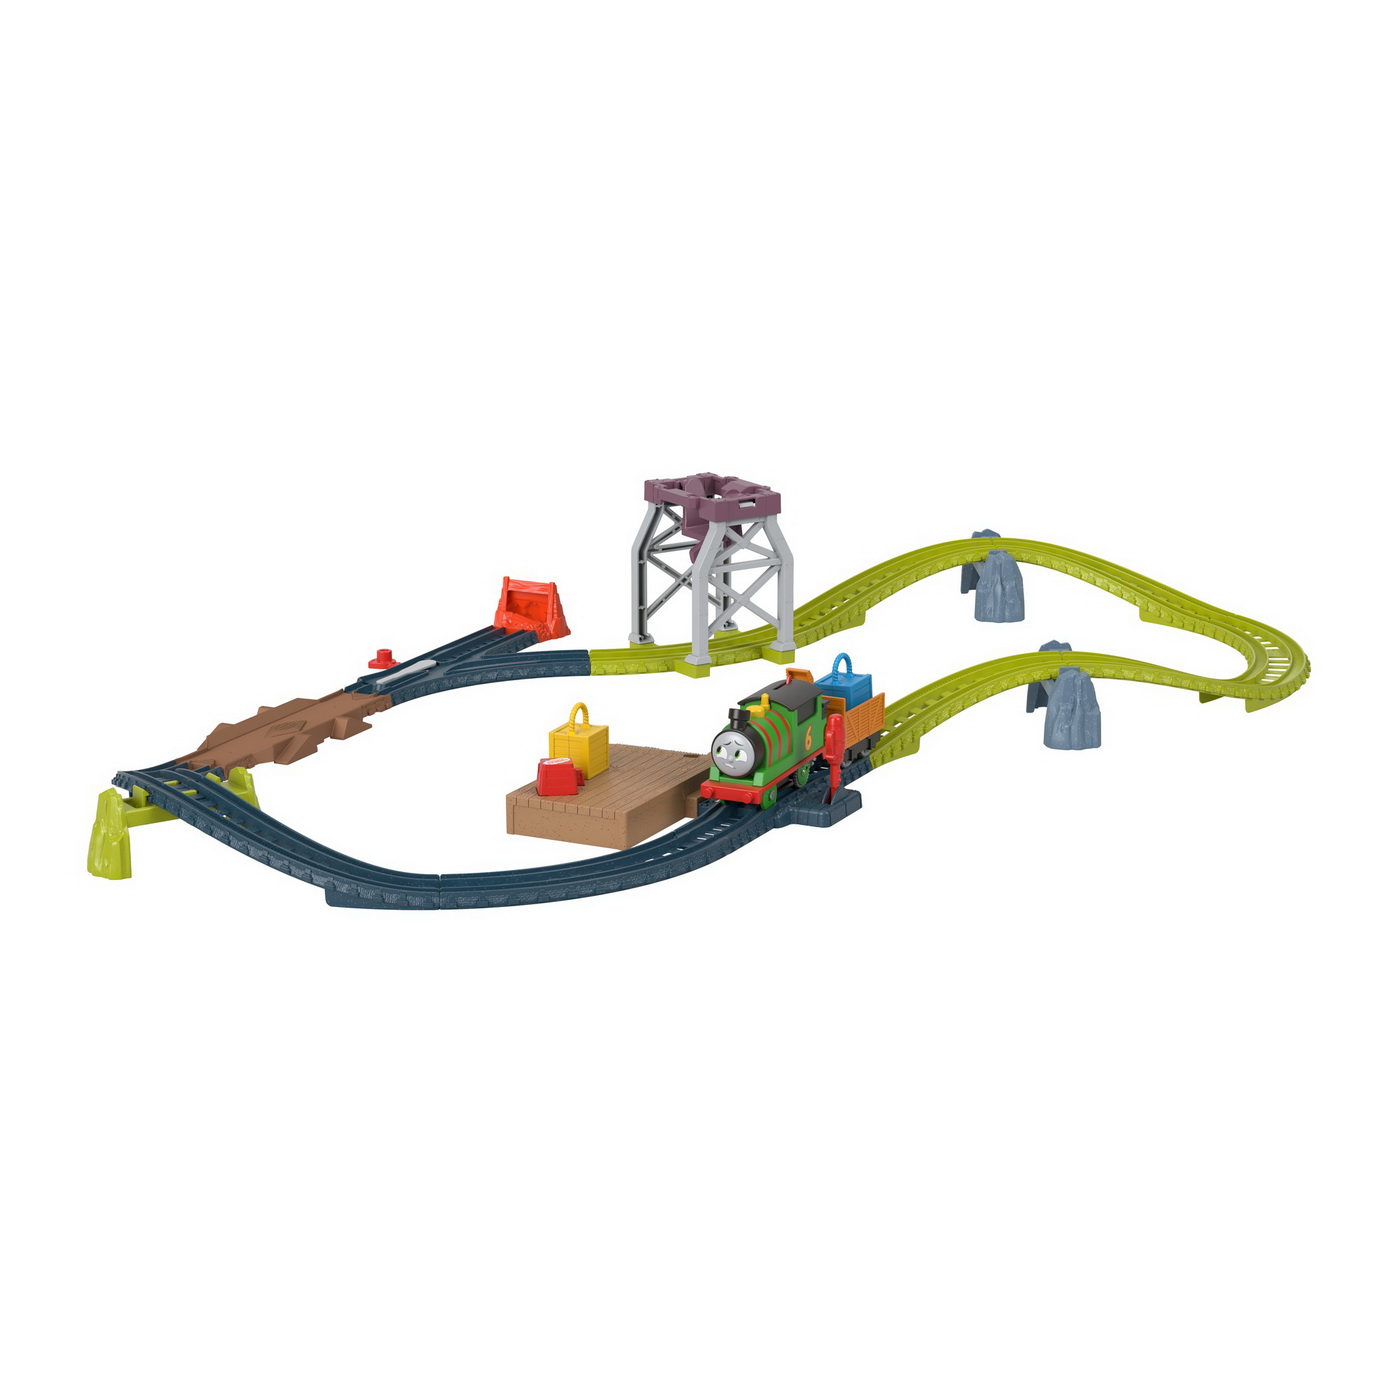 Set de joaca cu locomotiva motorizata Percy si accesorii, +3 ani, Thomas & Friends